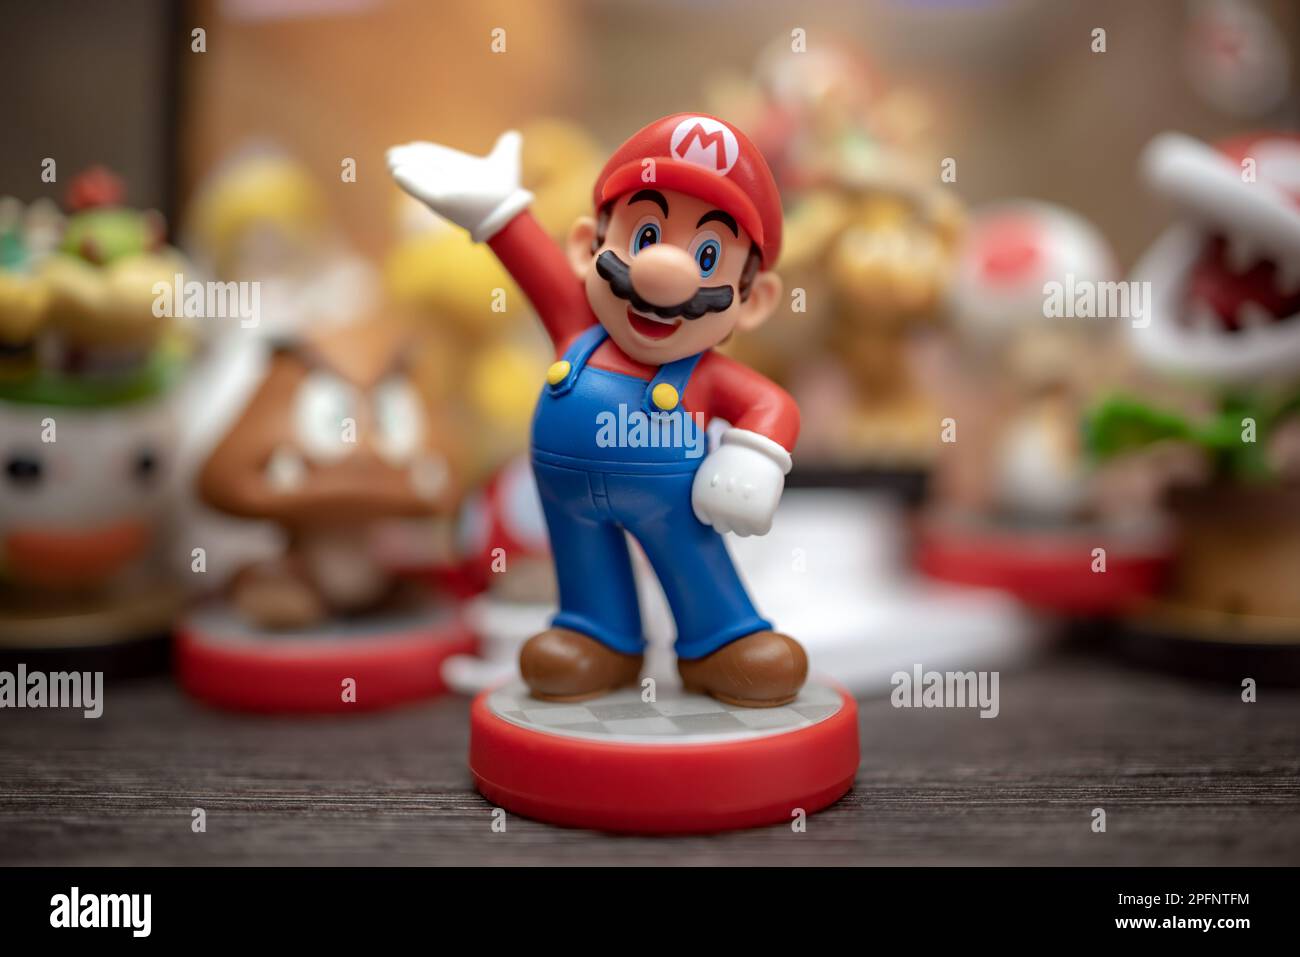 MOSKAU, RUSSLAND - 08. September 2022: Die Figur Super Mario Bros. Super  Mario ist eine japanische Plattform für Videospiele und Medienkonzerte  Stockfotografie - Alamy